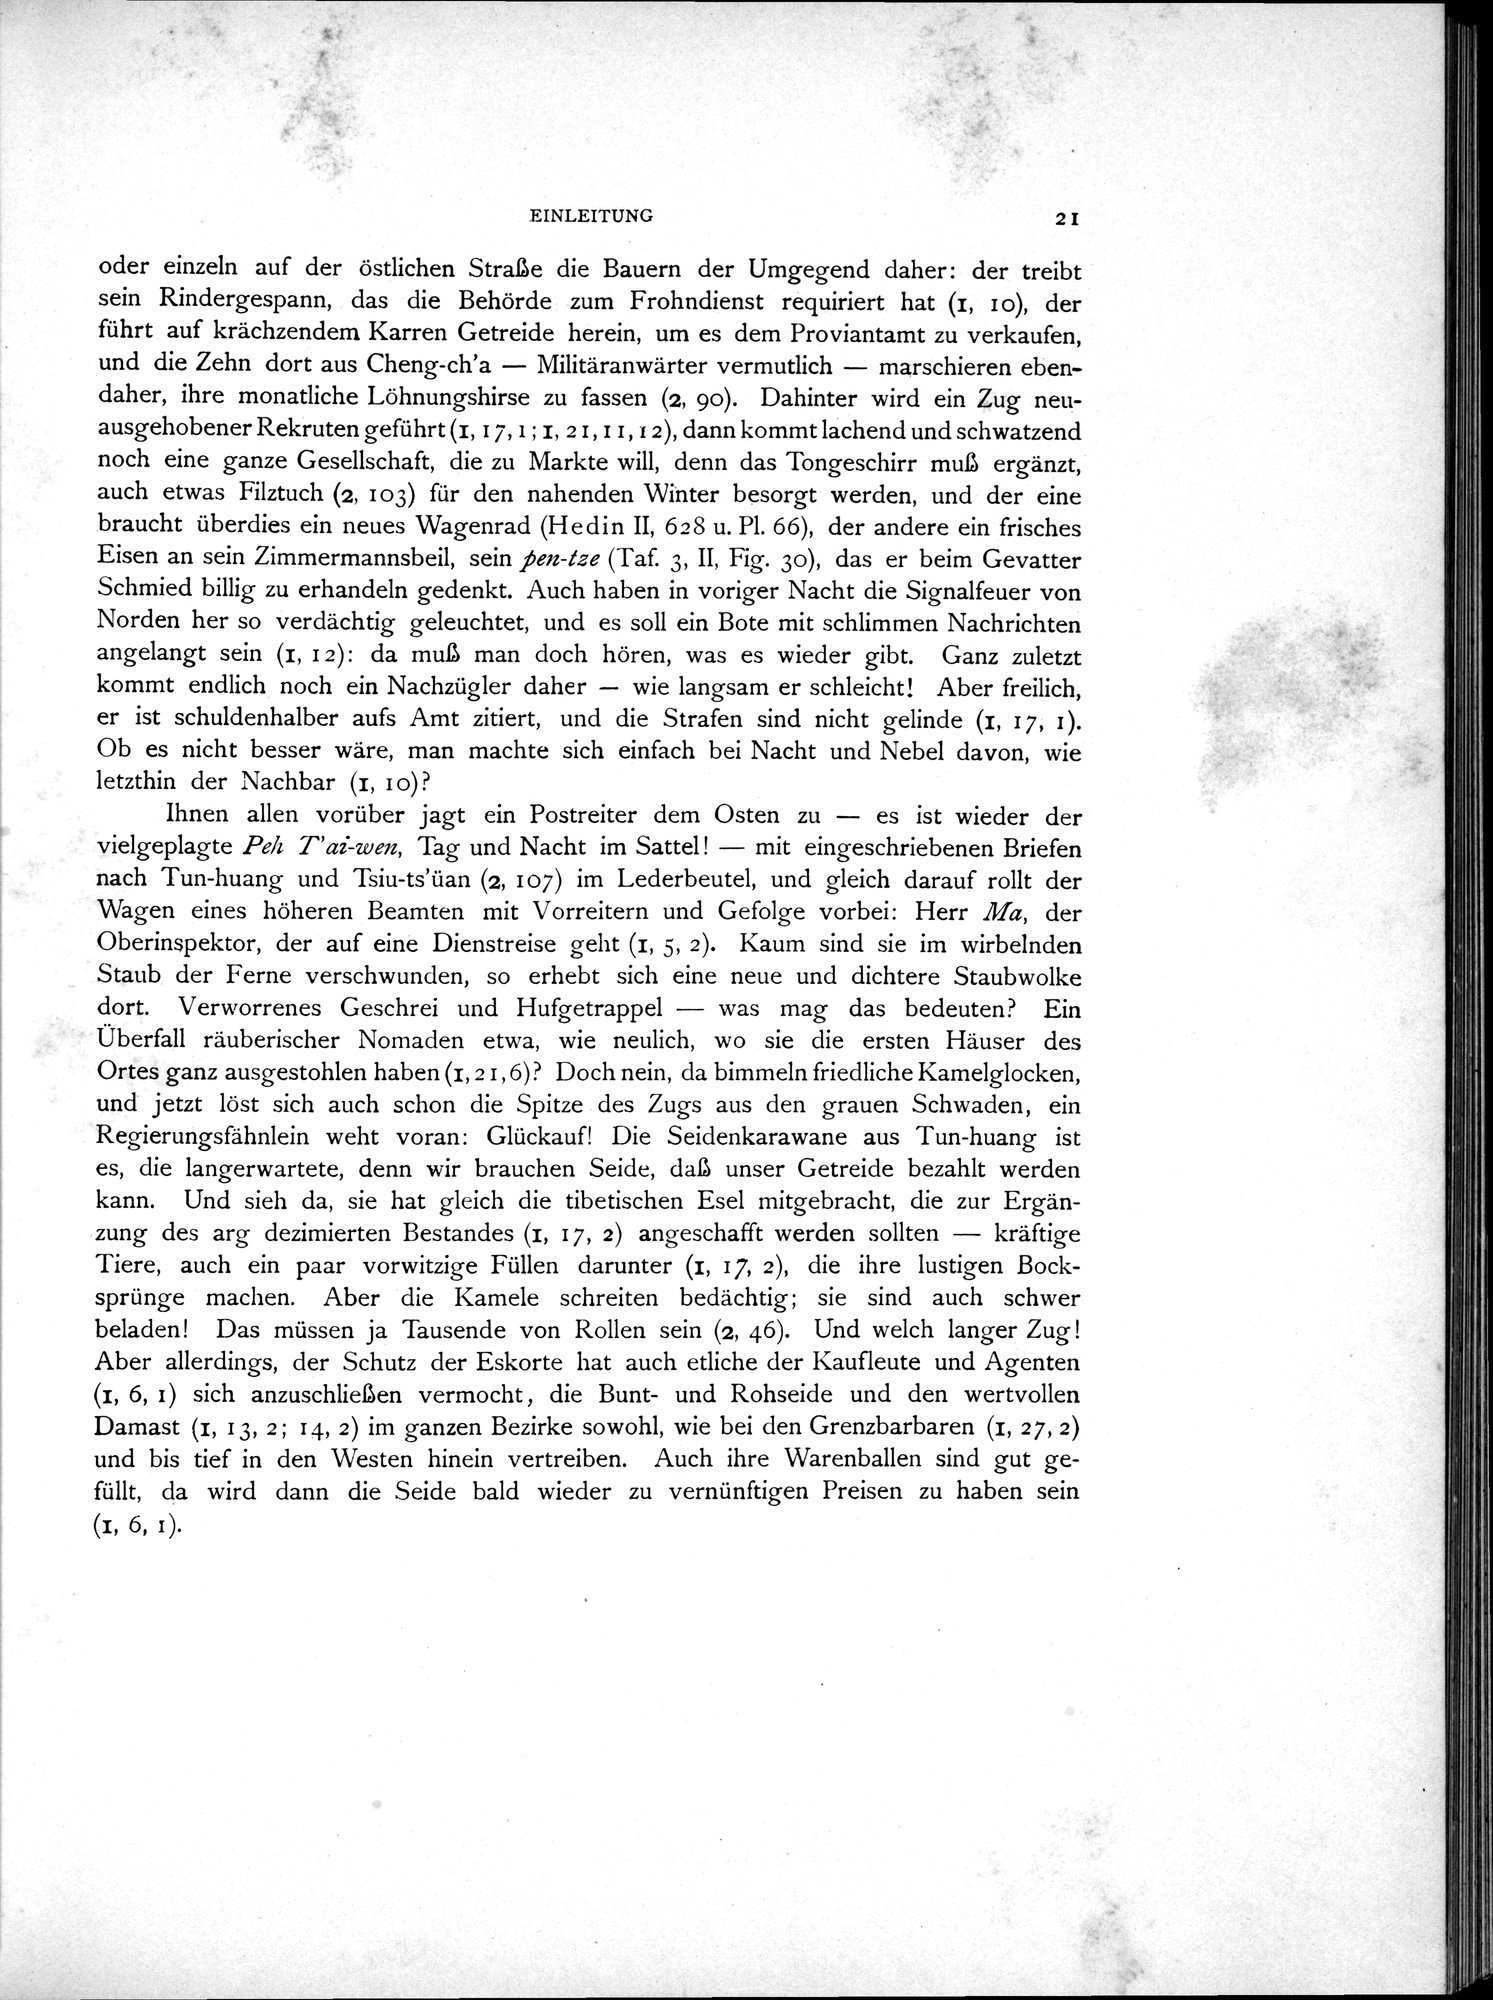 Die Chinesischen Handschriften- und sonstigen Kleinfunde Sven Hedins in Lou-lan : vol.1 / Page 45 (Grayscale High Resolution Image)